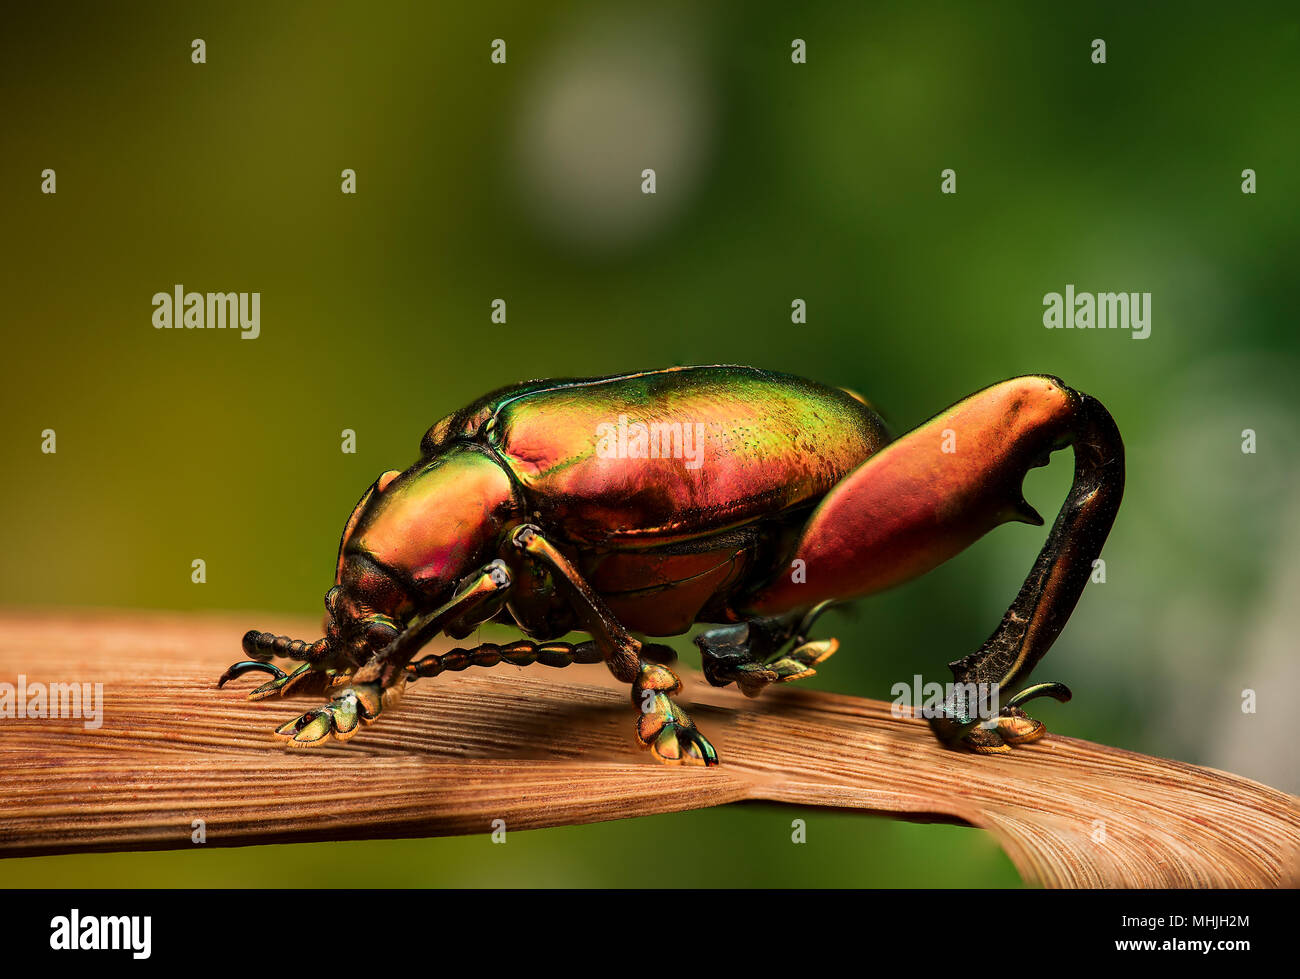 Sagra sp. - Patas de rana escarabajo Foto de stock